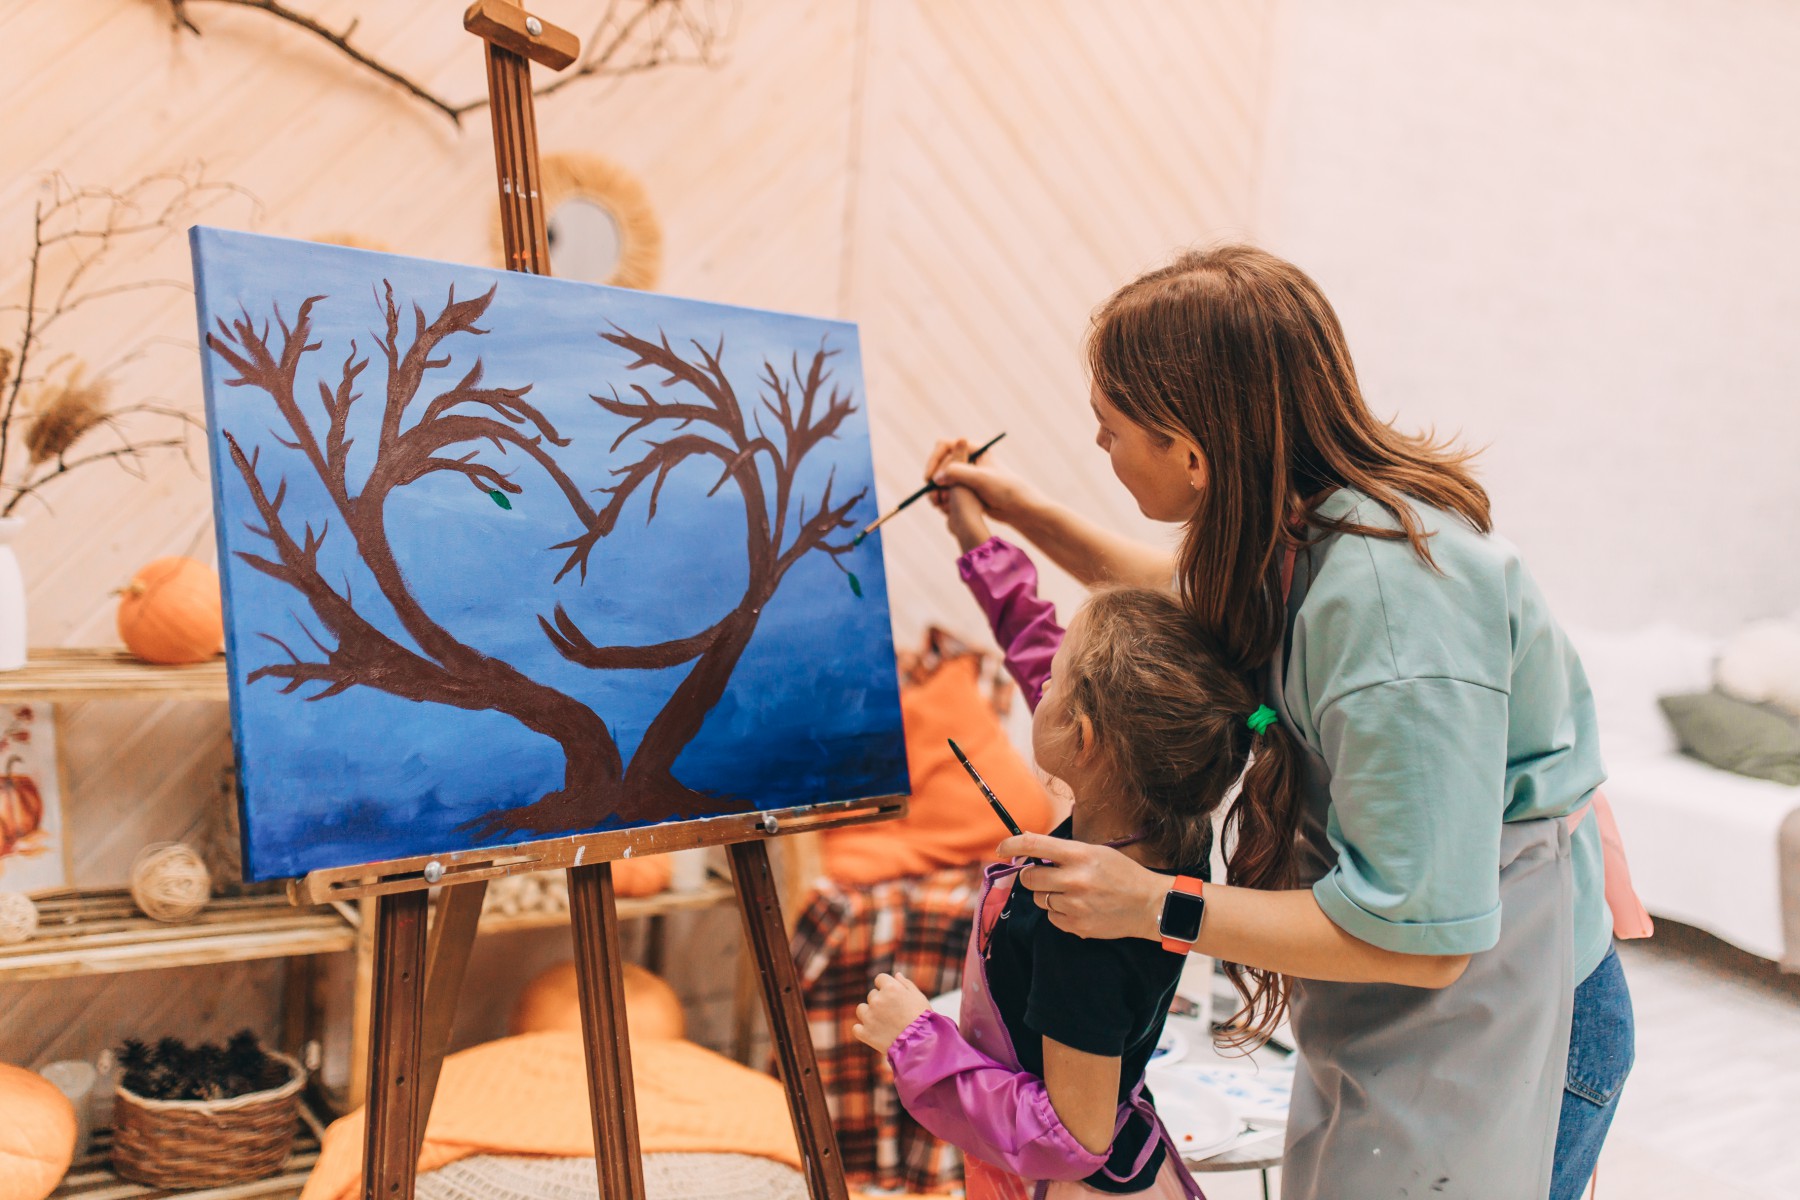 На мастер-классе по рисованию семья рисовала символическое семейное дерево. Мама Ксюша помогает дочке Ульяне рисовать листочки. Фото Альбины Крутелевой